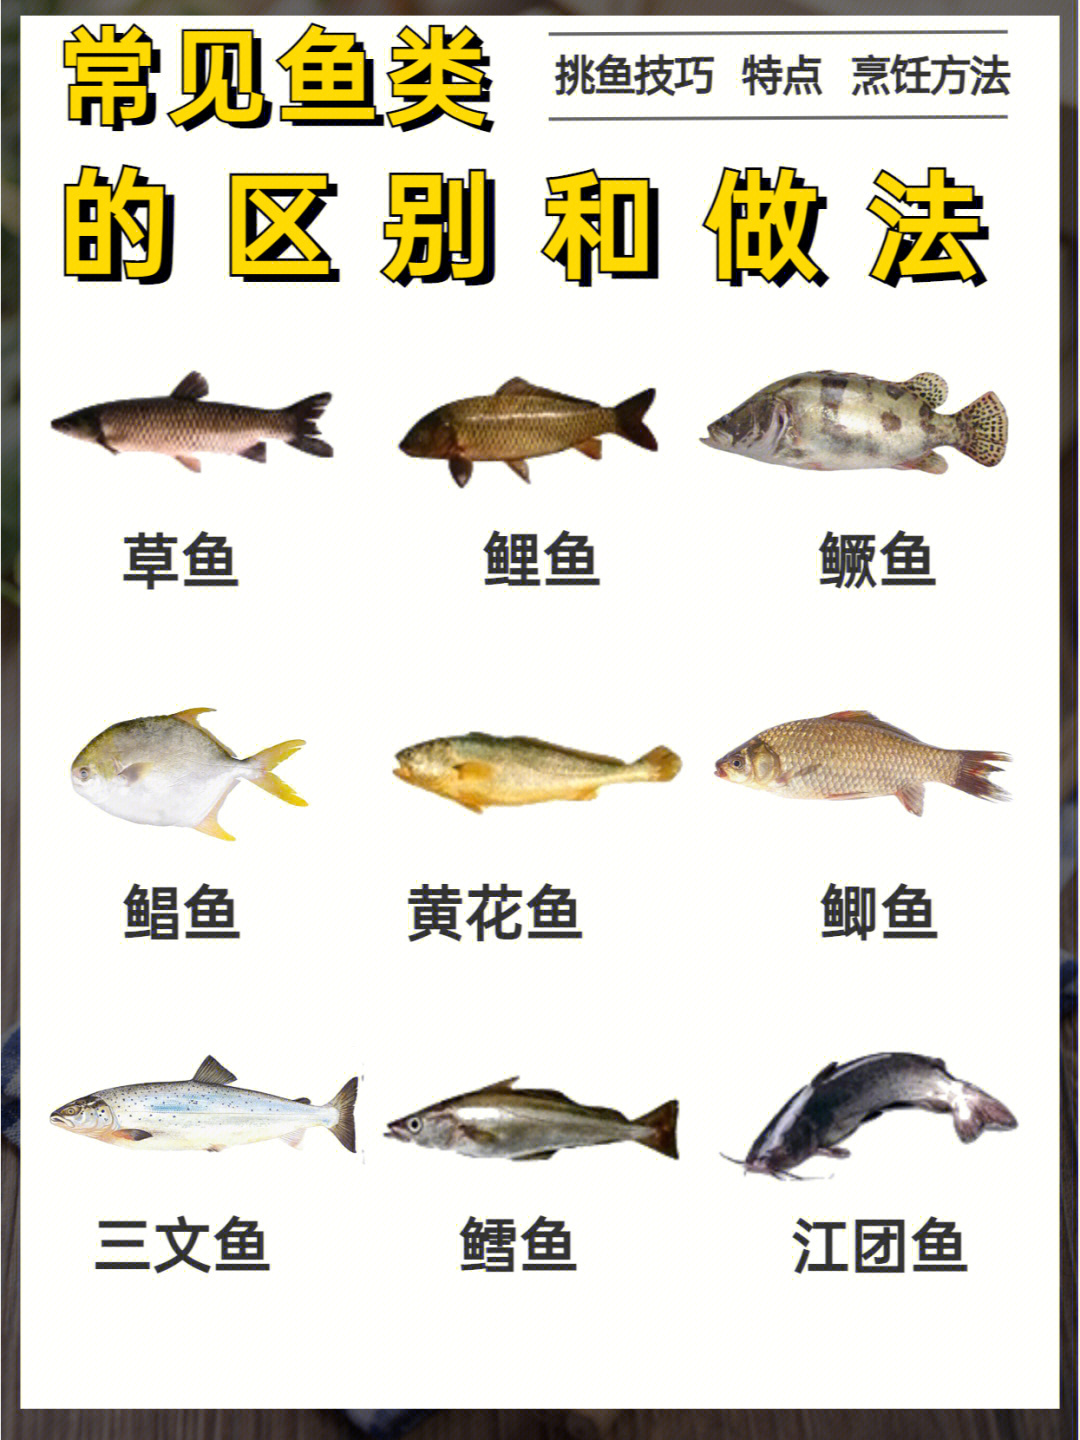 各种河鱼的图片和名字图片